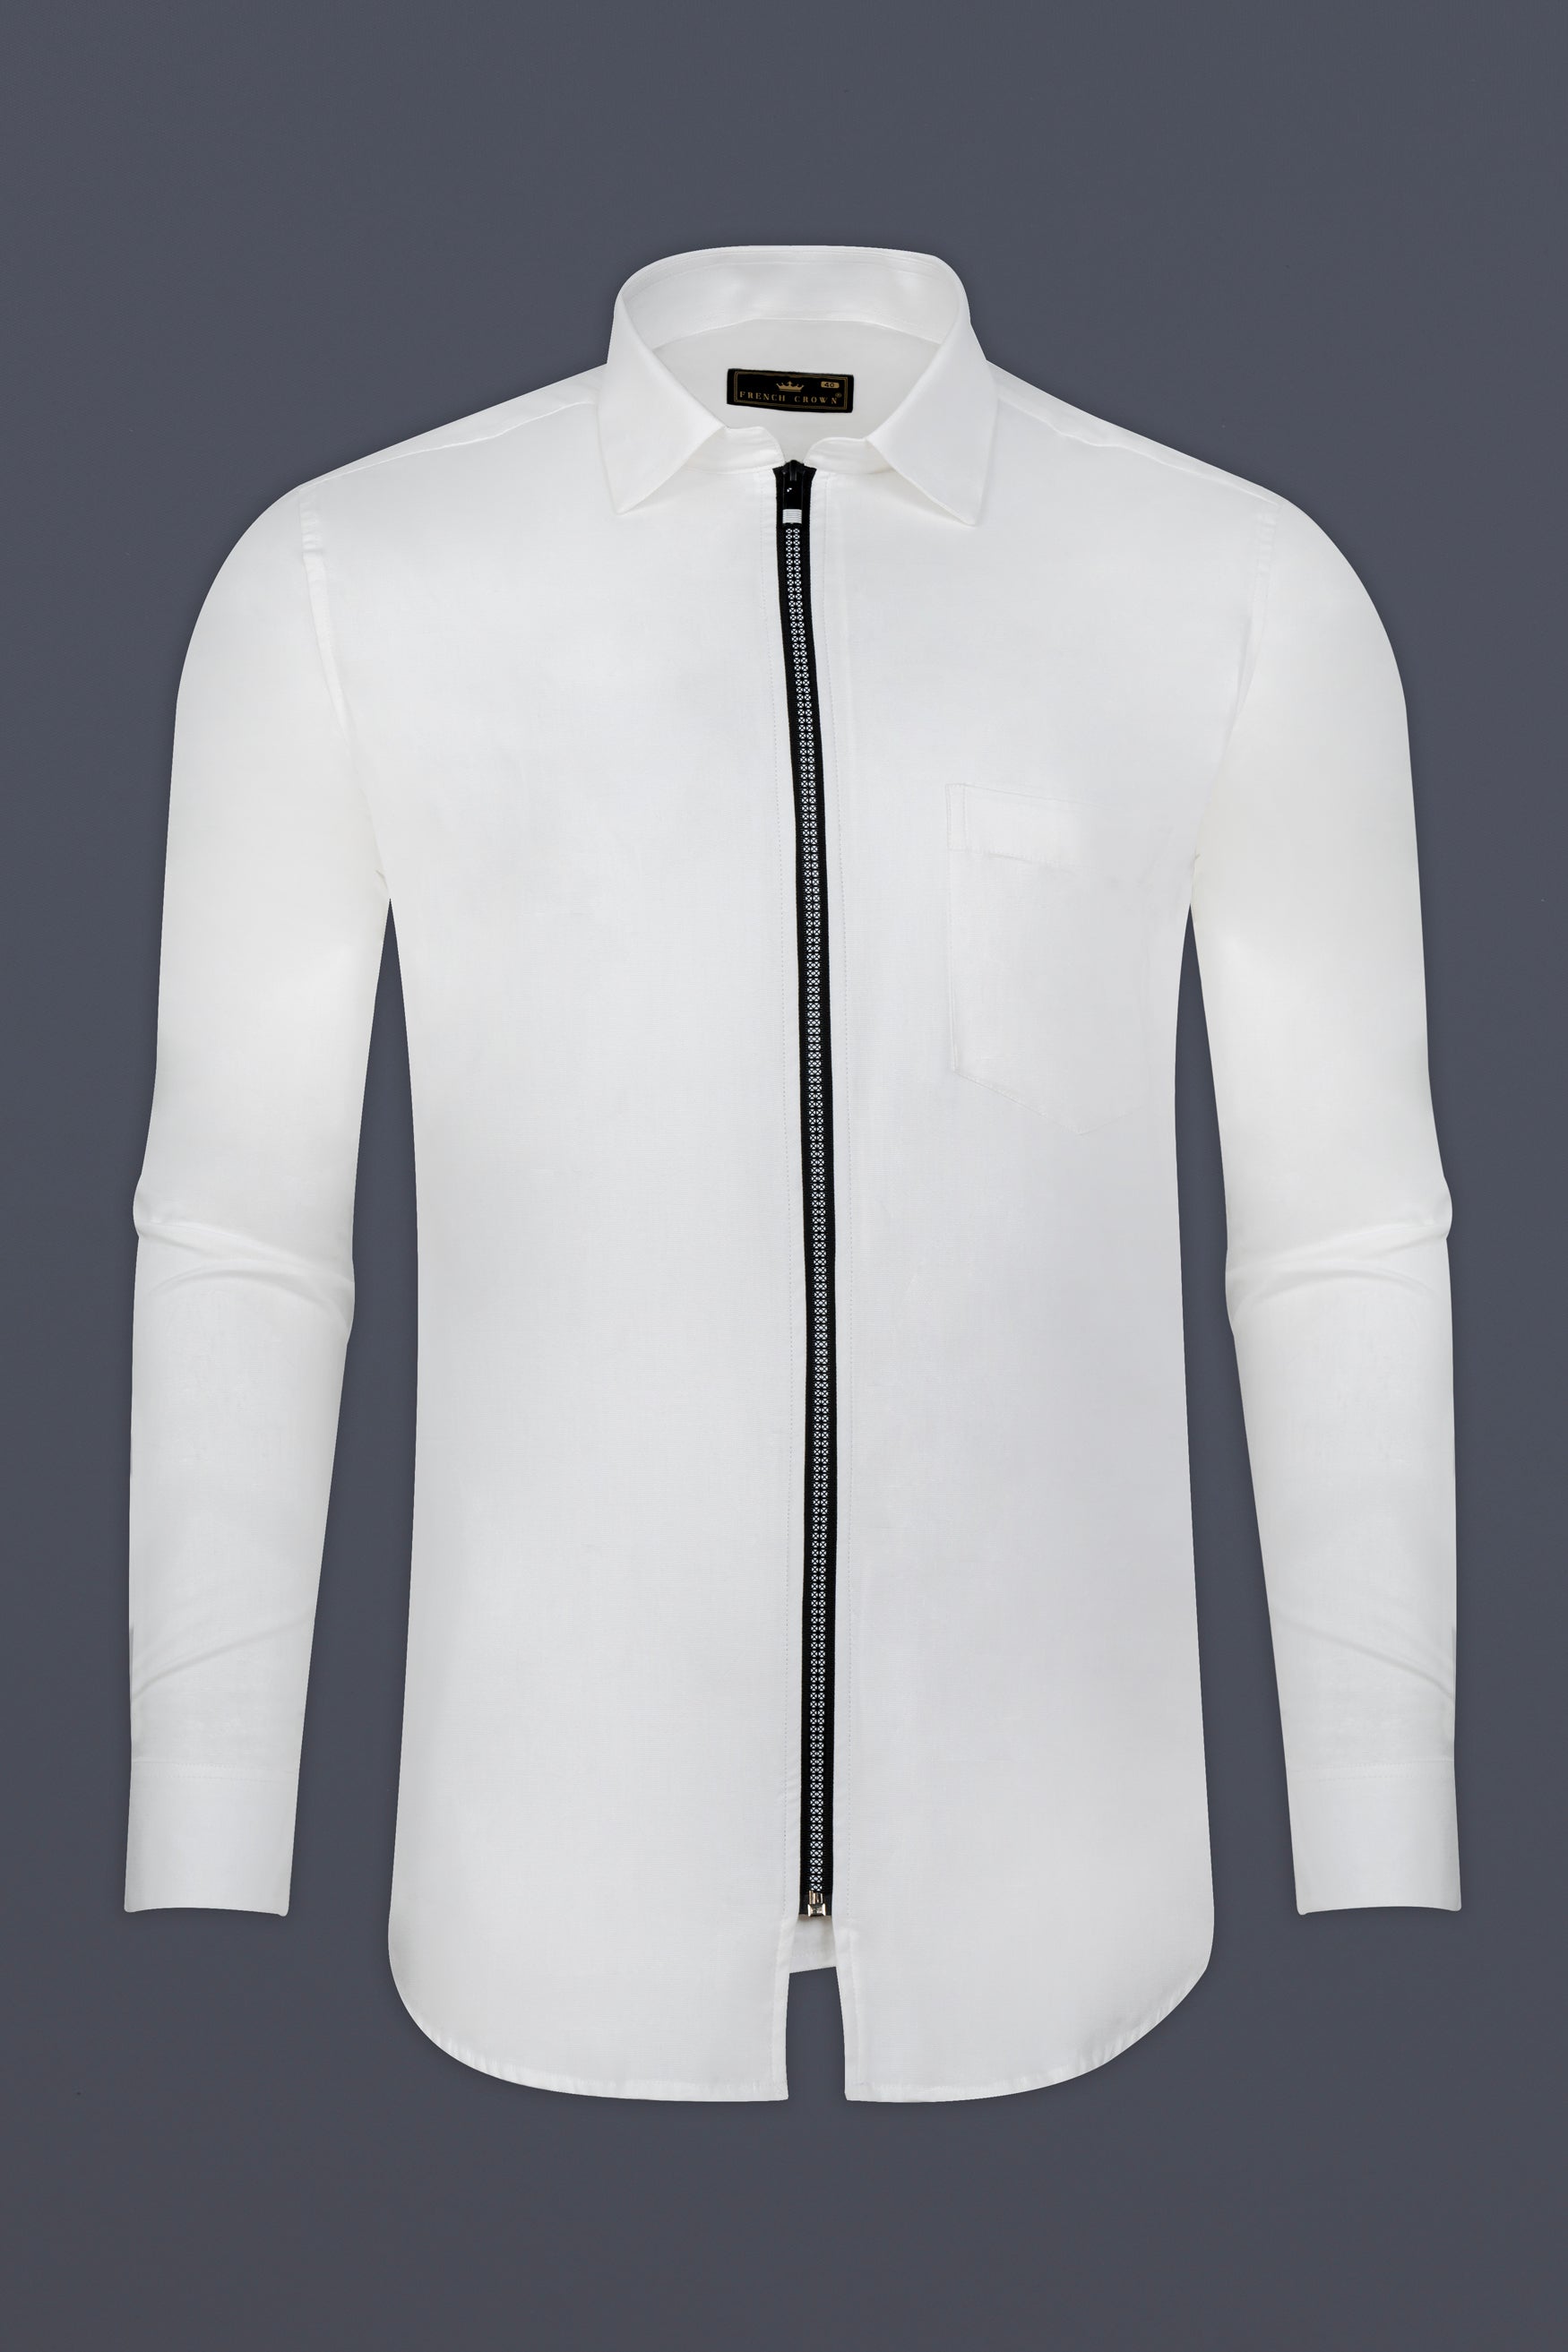 Bright White Dobby Textured Premium Giza Cotton Designer Overshirt with Zipper Closure